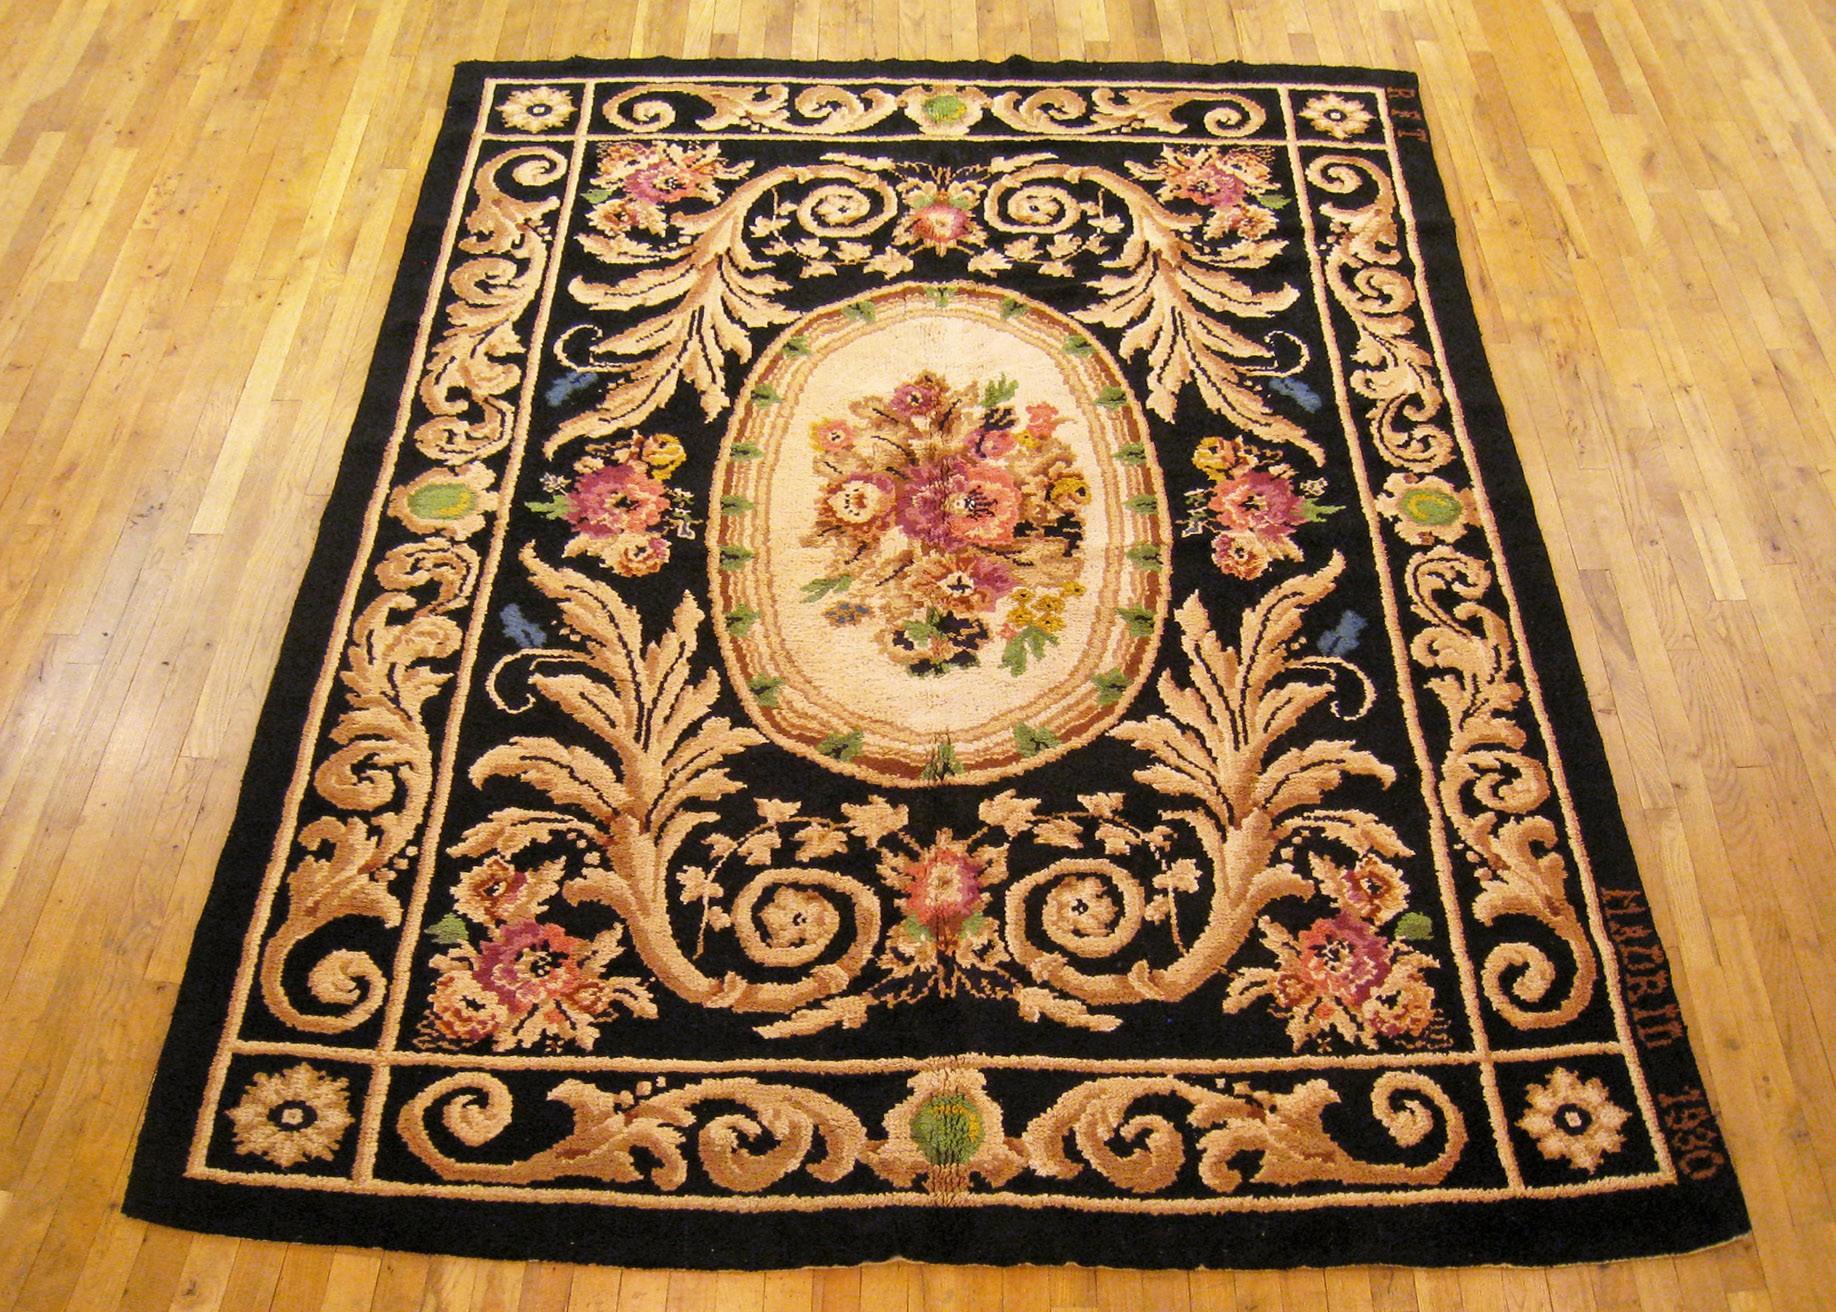 Spanischer Vintage Savonnerie-Teppich, Zimmergröße, um 1930.

Ein einzigartiger europäischer Savonnerie-Orienteppich, handgeknüpft mit kurzem Wollflor. Dieser schöne Teppich zeigt ein zentrales Medaillon auf einem schwarzen Grundfeld mit schwarzer